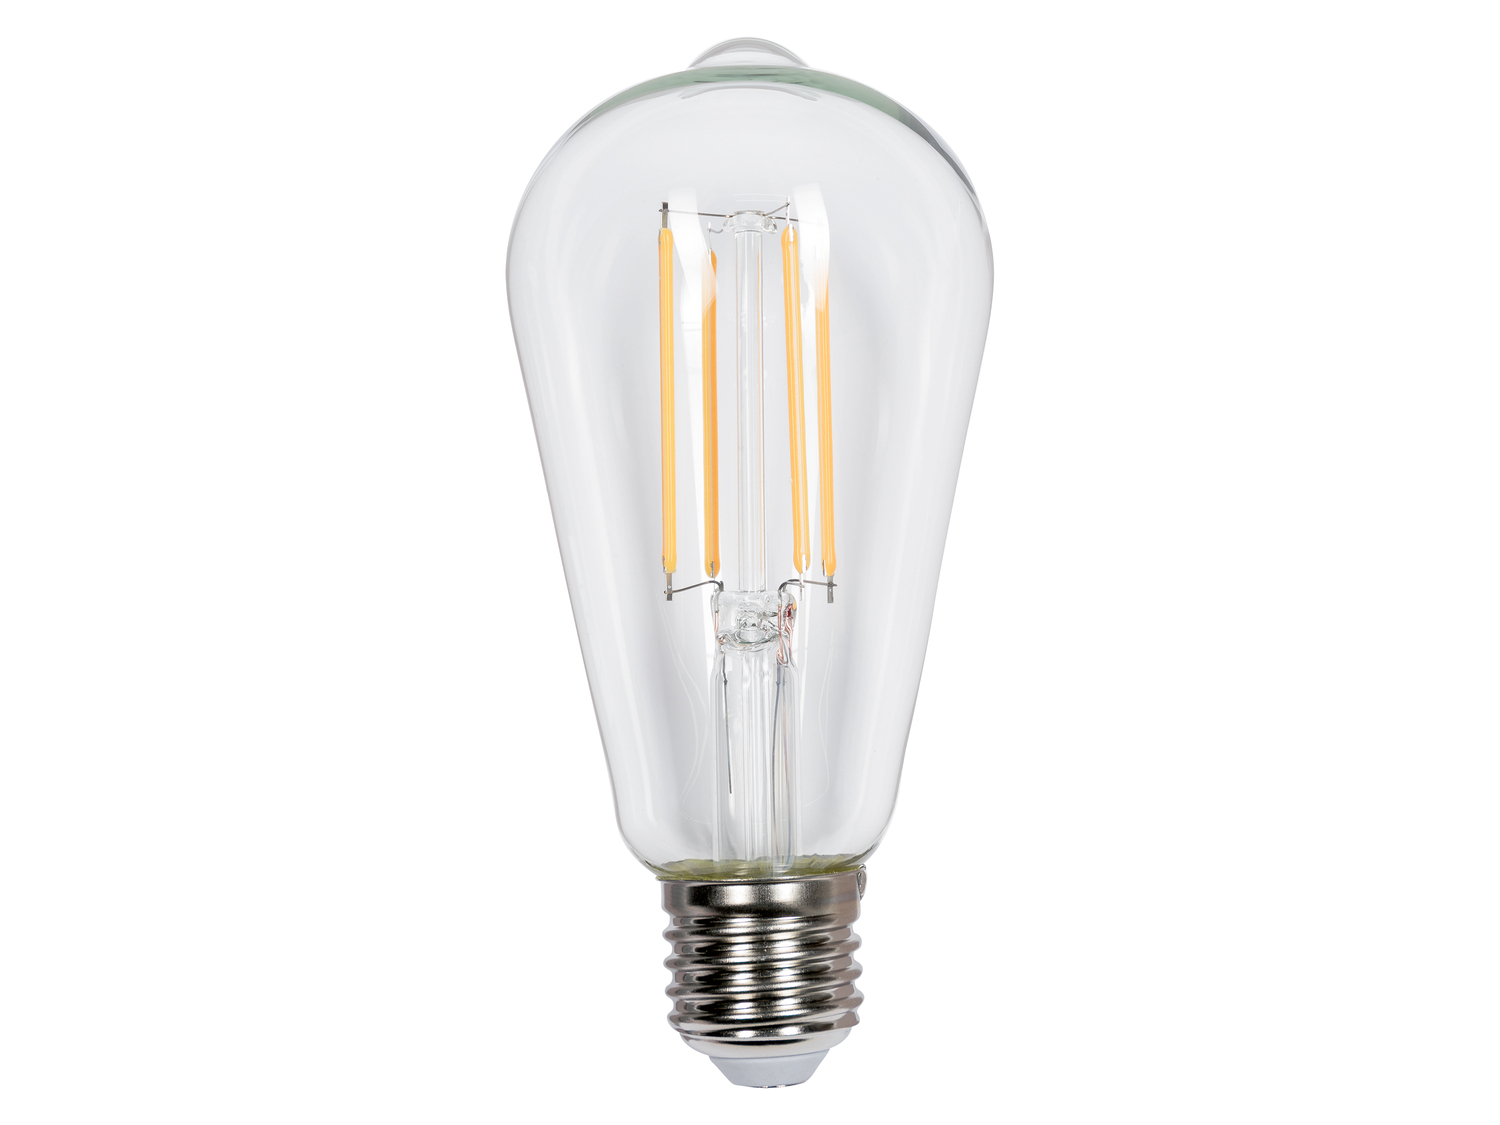 Ampoule LED à filament , le prix 2.99 € 
- E27 : 806 lumen
- Light : 8 W, ...